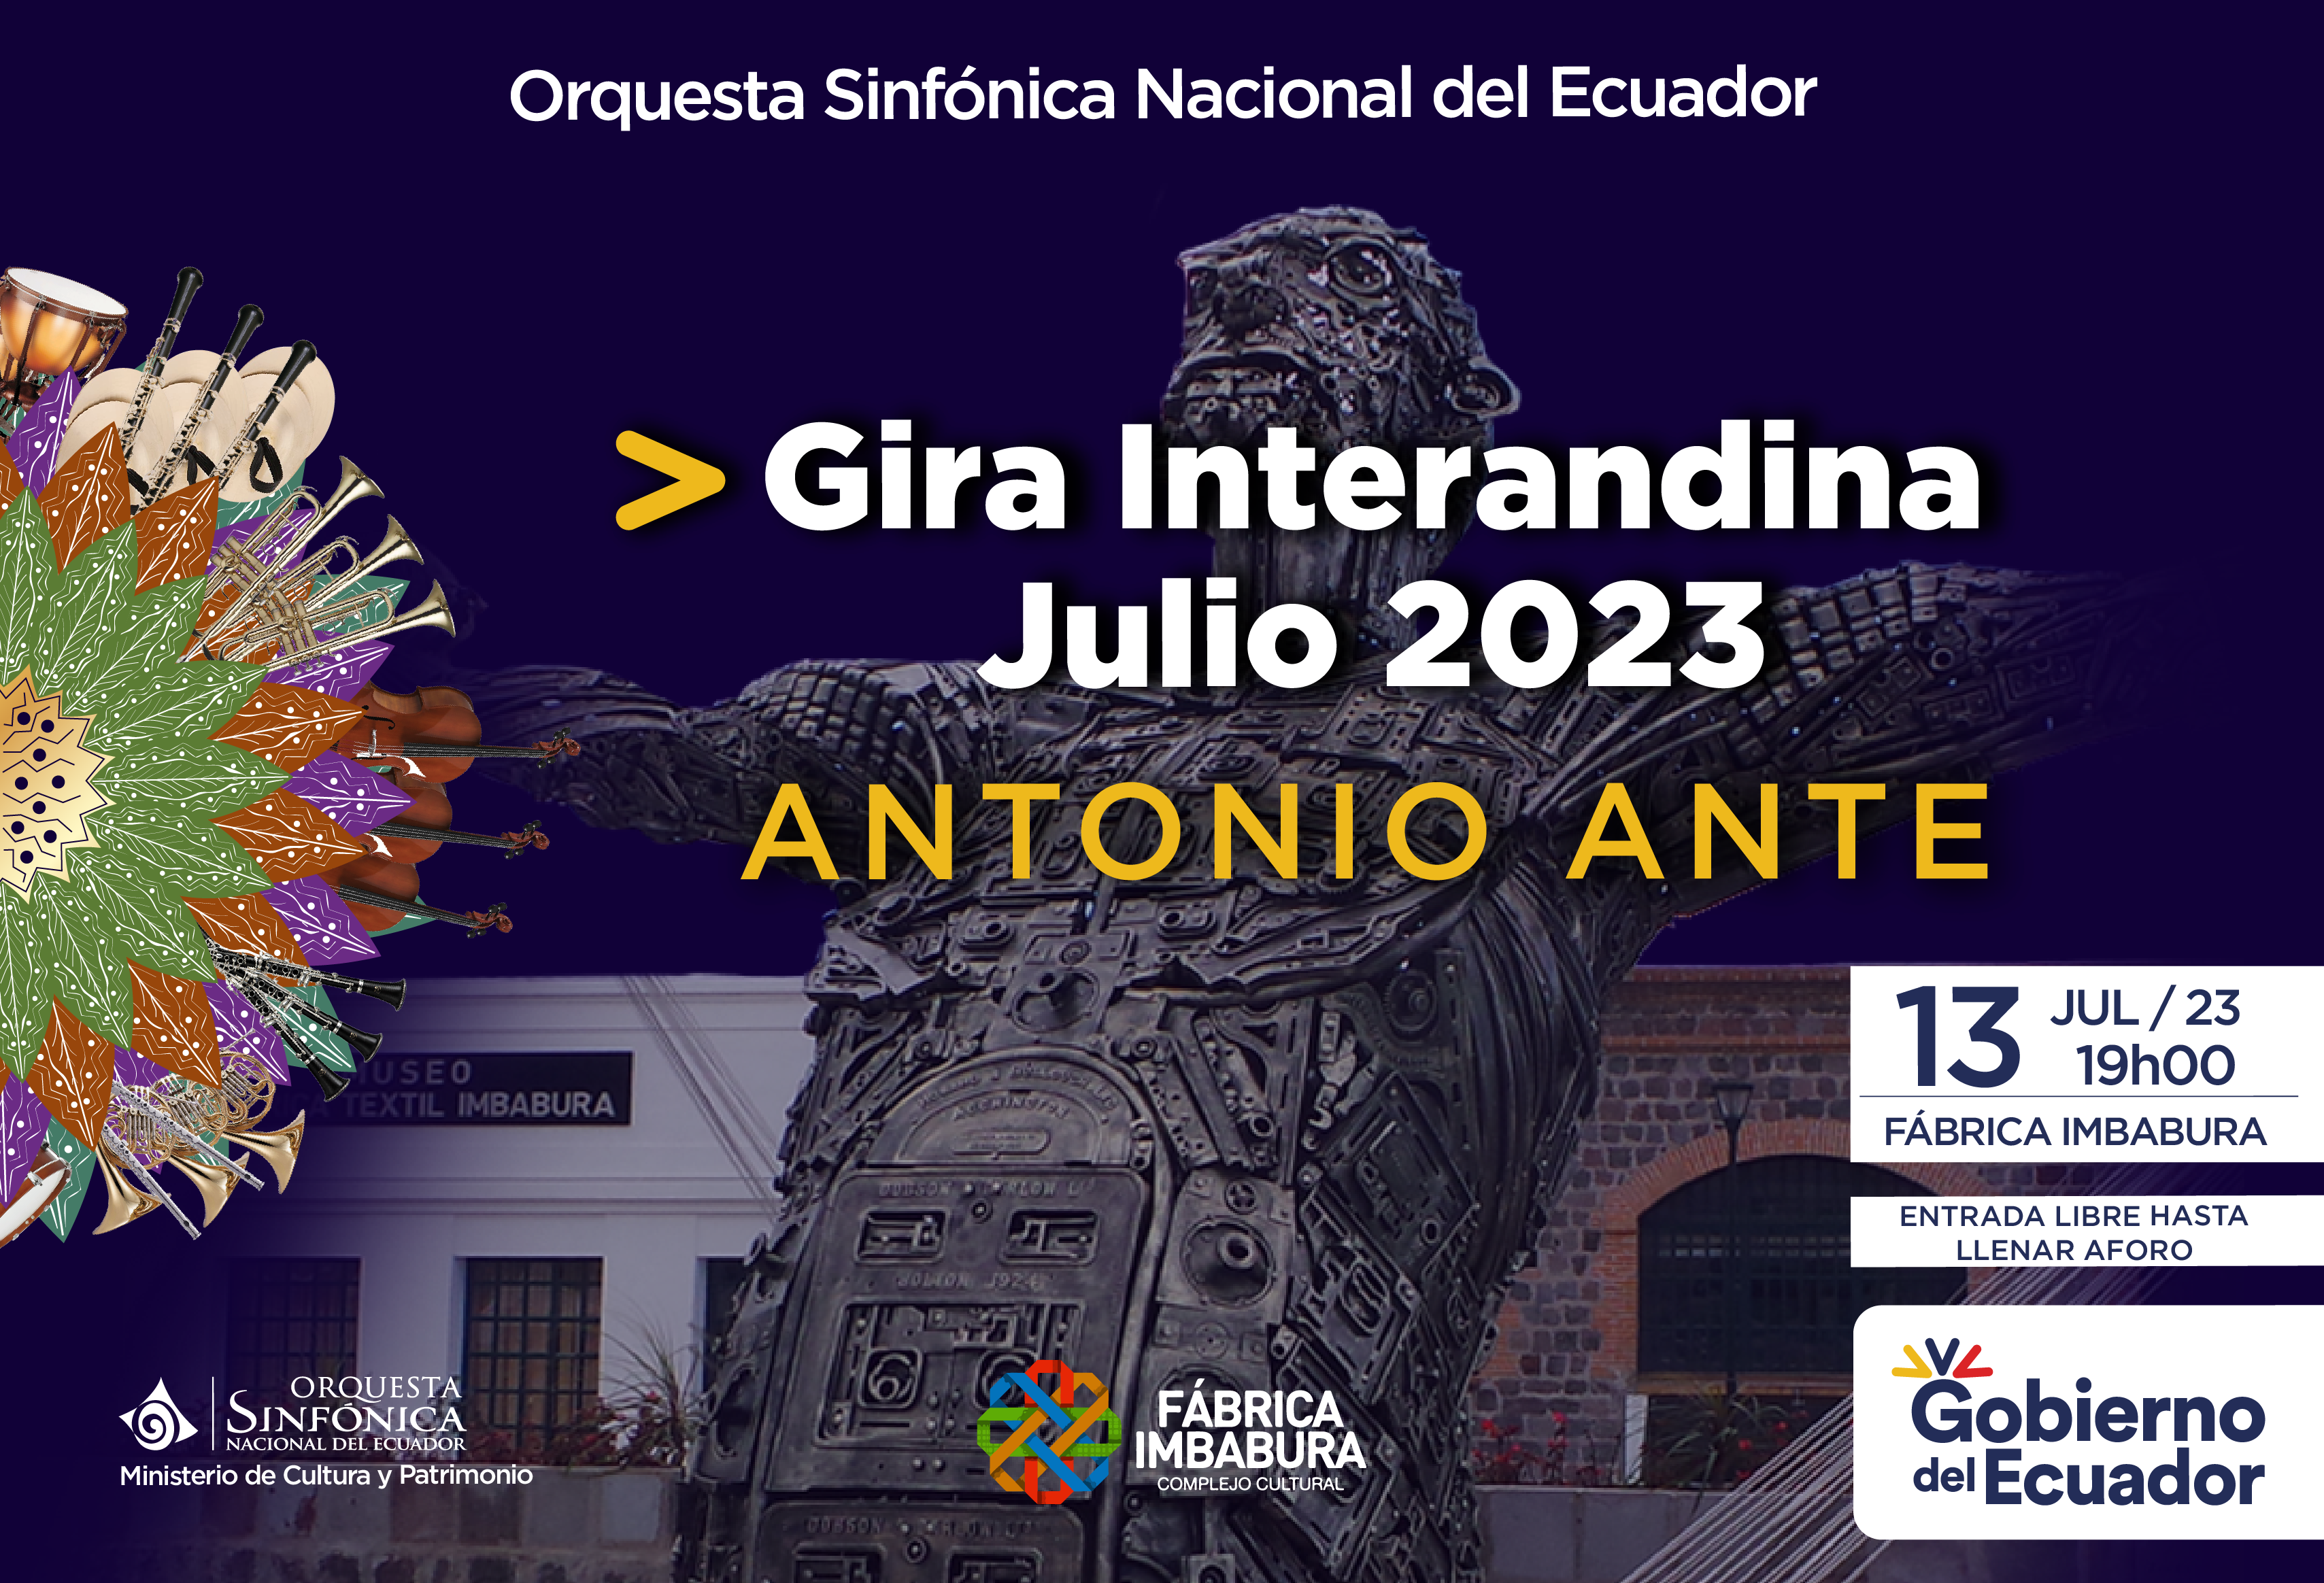 Gira Interandina Julio 2023 - Antonio Ante